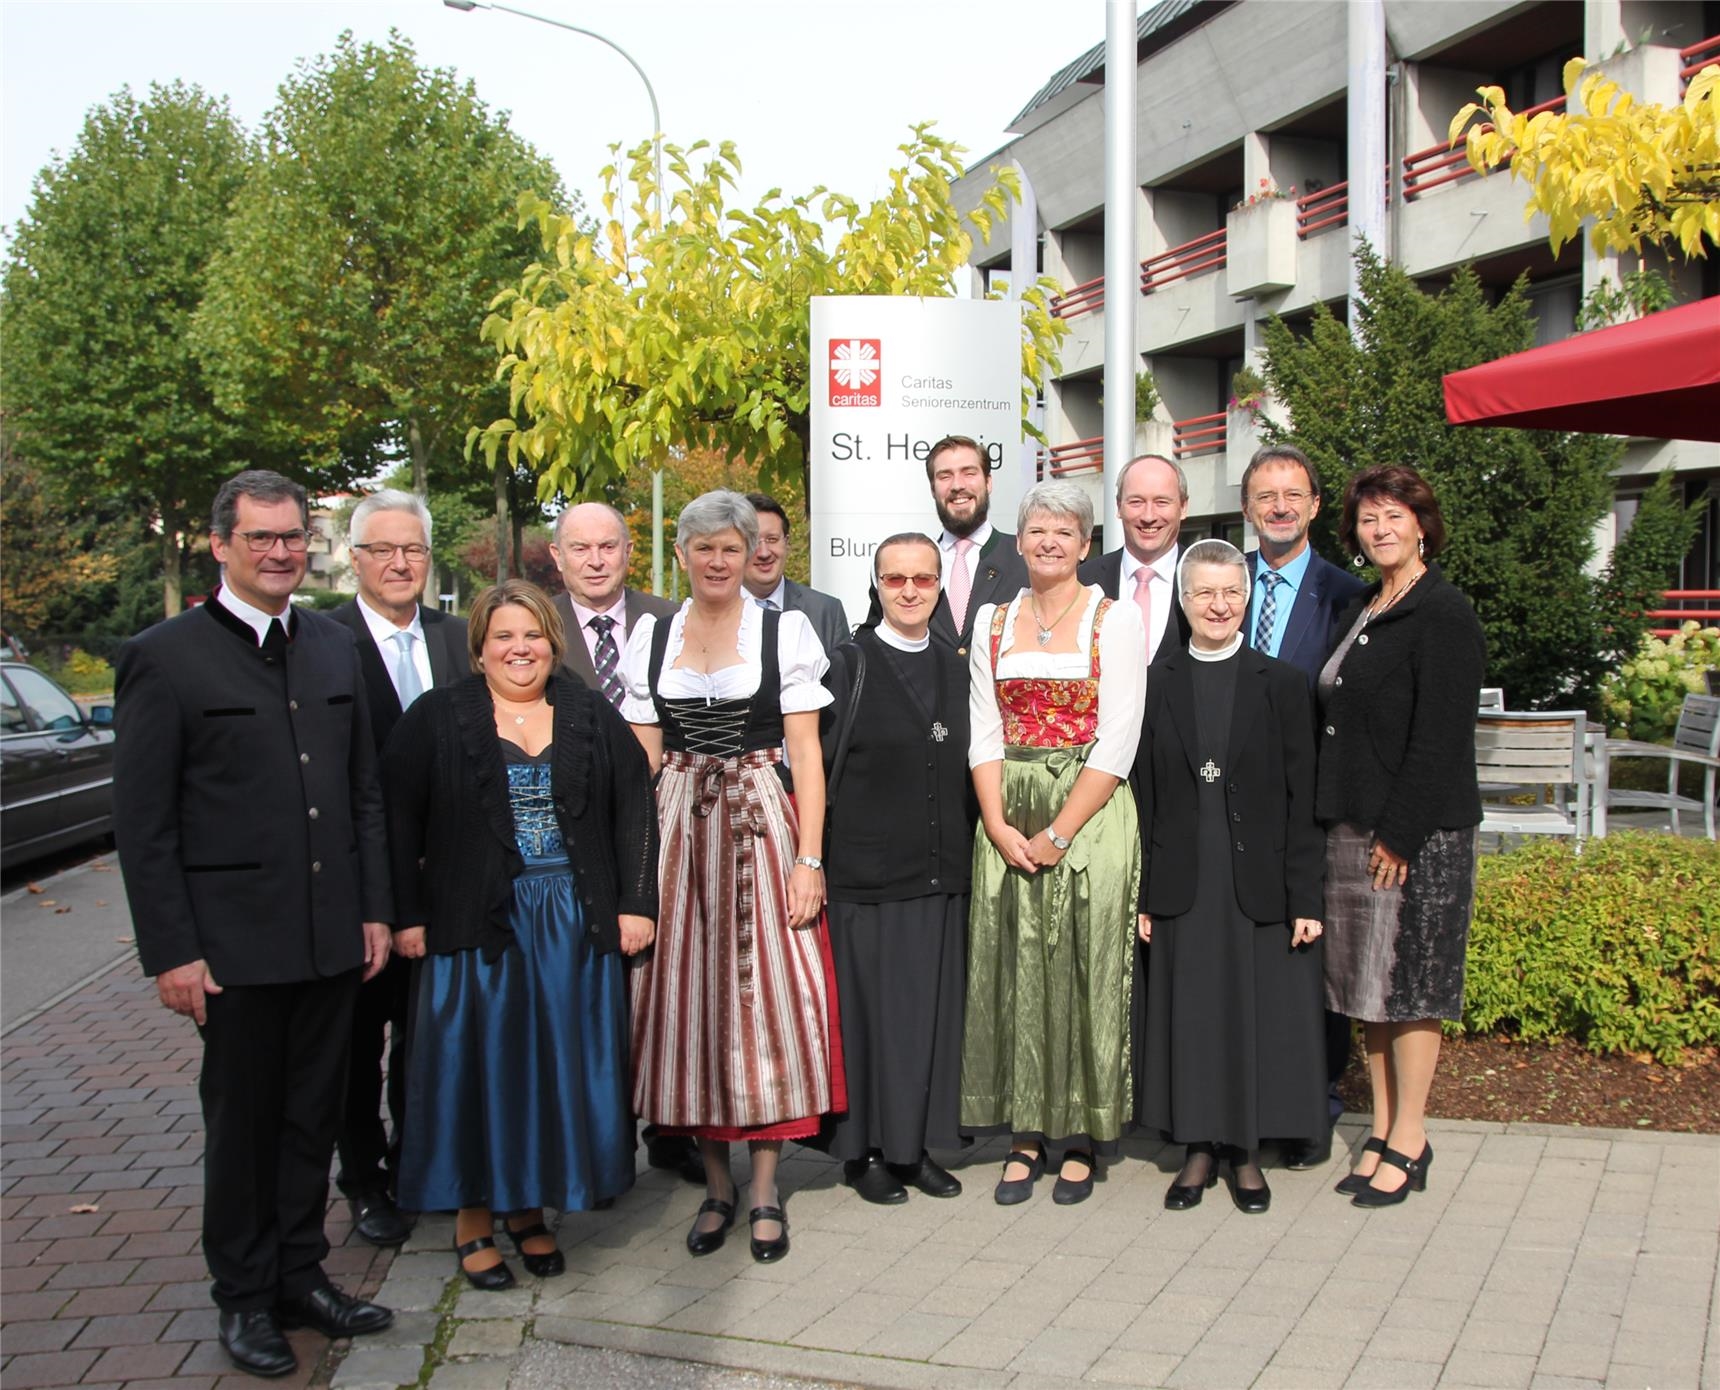 Sie feierten gemeinsam das 40-jährige Jubiläum des Caritas-Seniorenzentrums St. Hedwig in Königsbrunn mit einem Festgottesdienst und einem kleinen Festakt. (Bernhard Gattner)